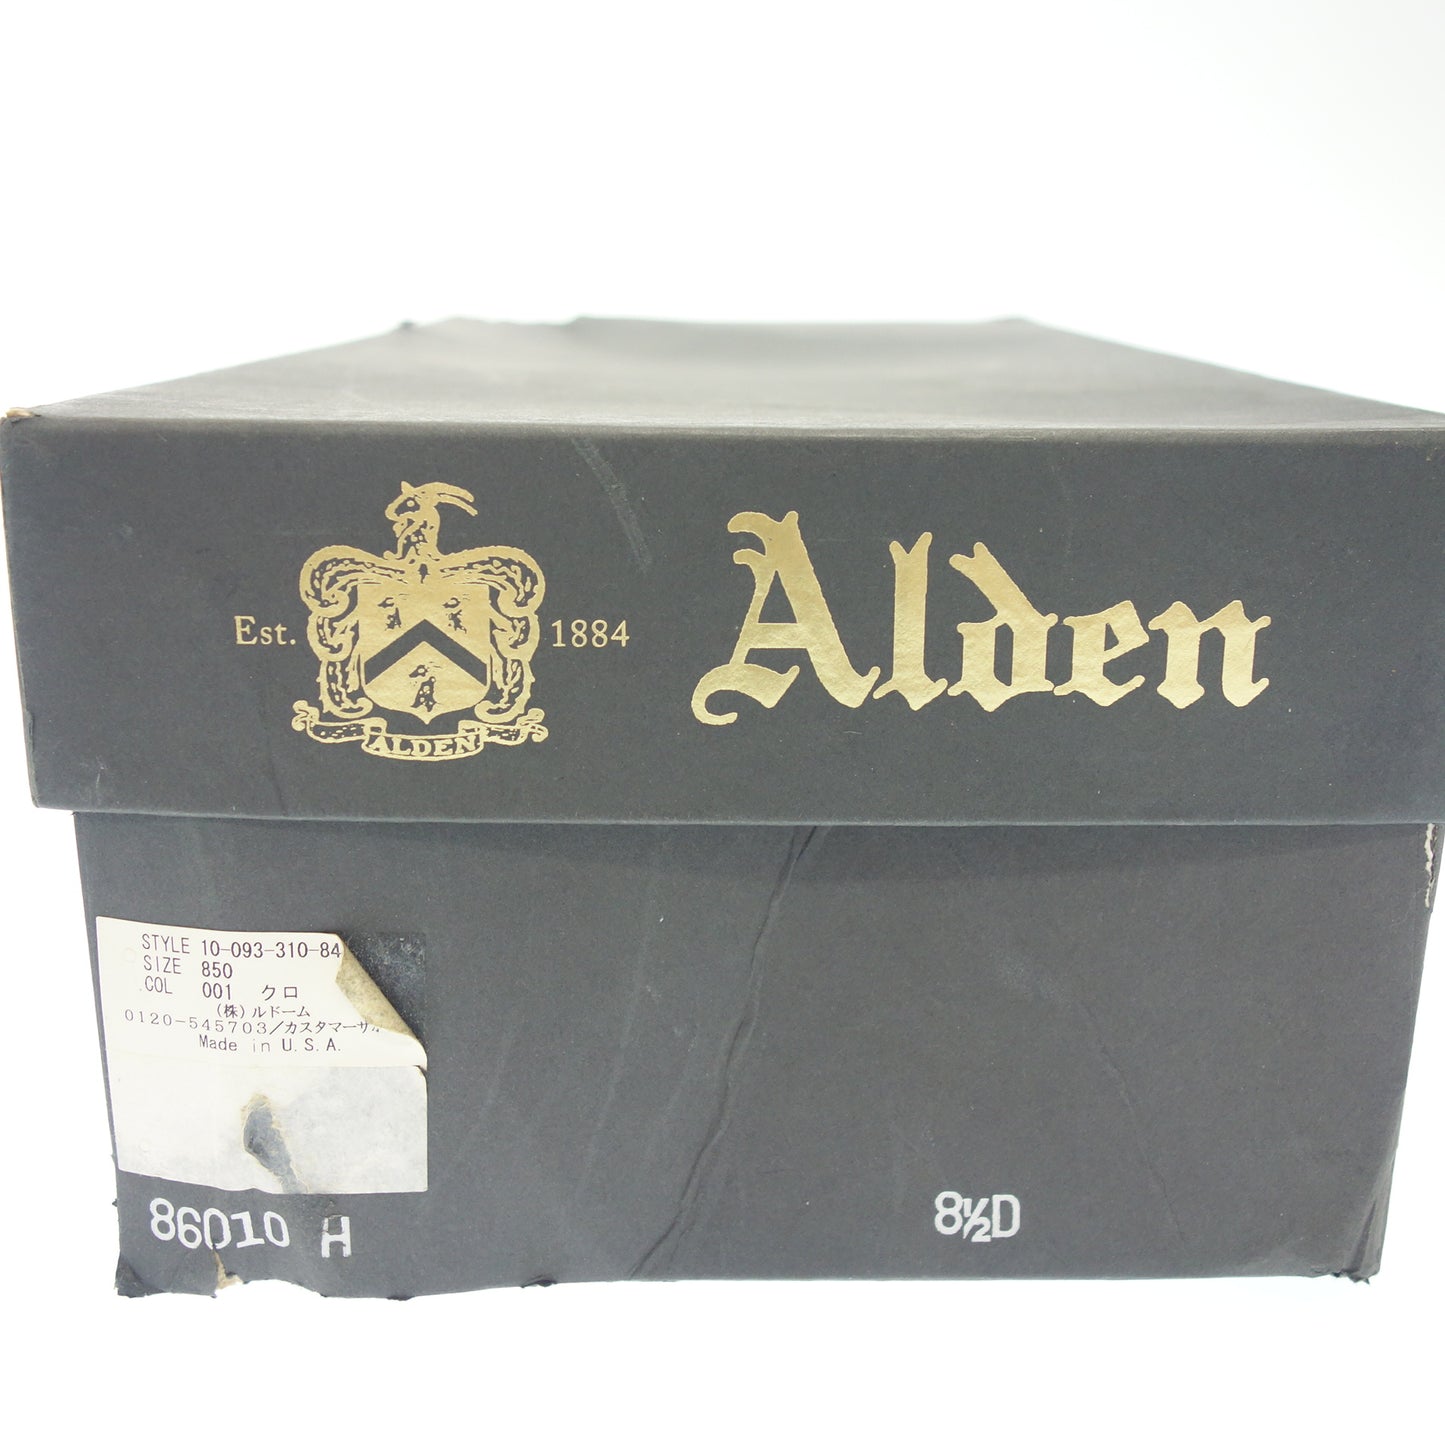 【ALDEN】オールデン 86010H レースアップブーツ コードバン アルパインカーフ ブラック US8.5D トゥルーバランスラスト